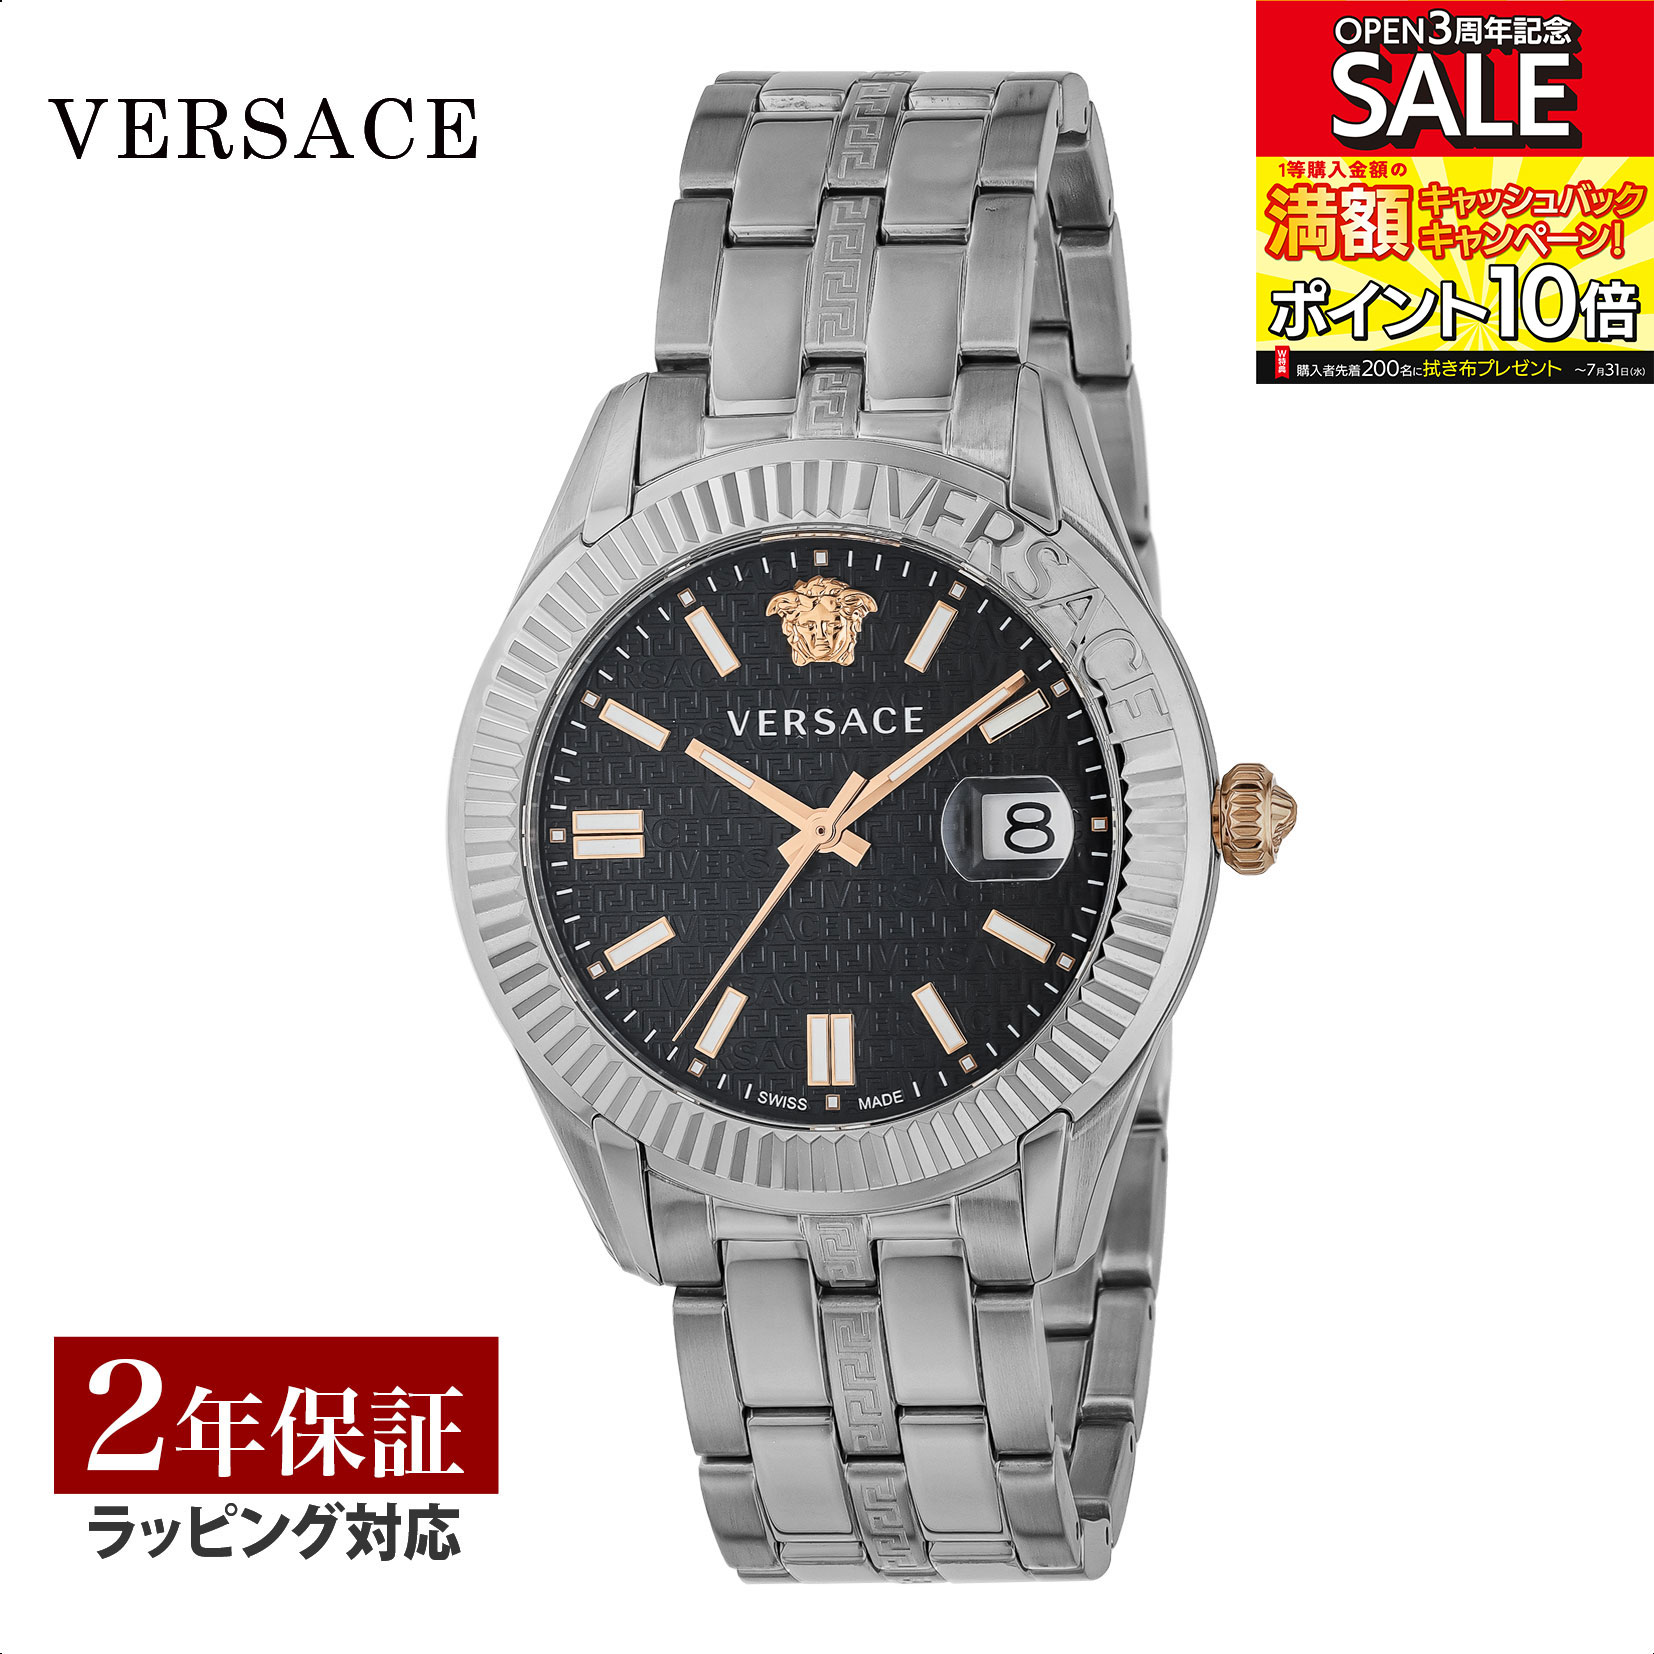 ヴェルサーチェ 腕時計（メンズ） ヴェルサーチェ VERSACE メンズ 時計 グレカ タイム Greca Time クォーツ ブラック VE3K00322 腕時計 高級腕時計 ブランド